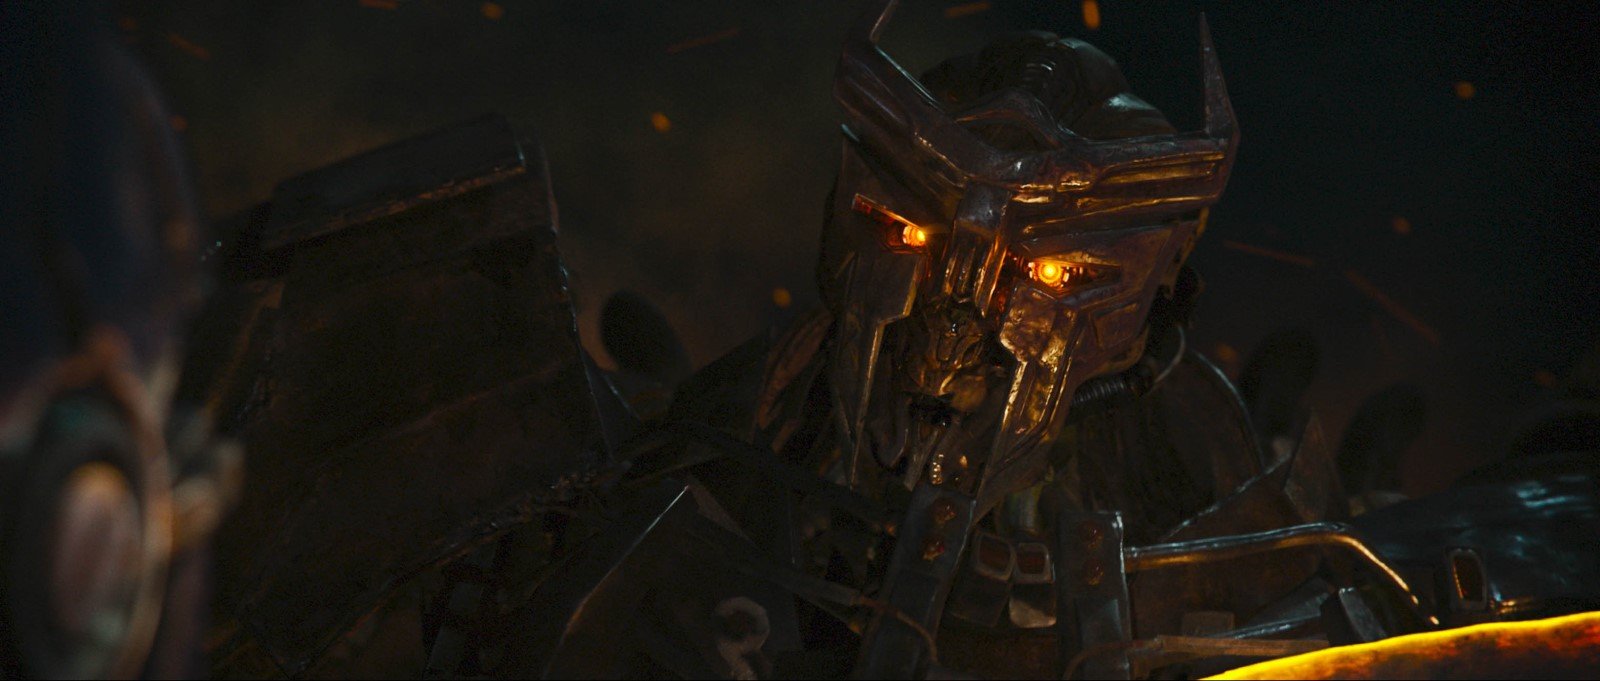 Transformers: O Despertar das Feras, Novo Trailer Oficial, LEG